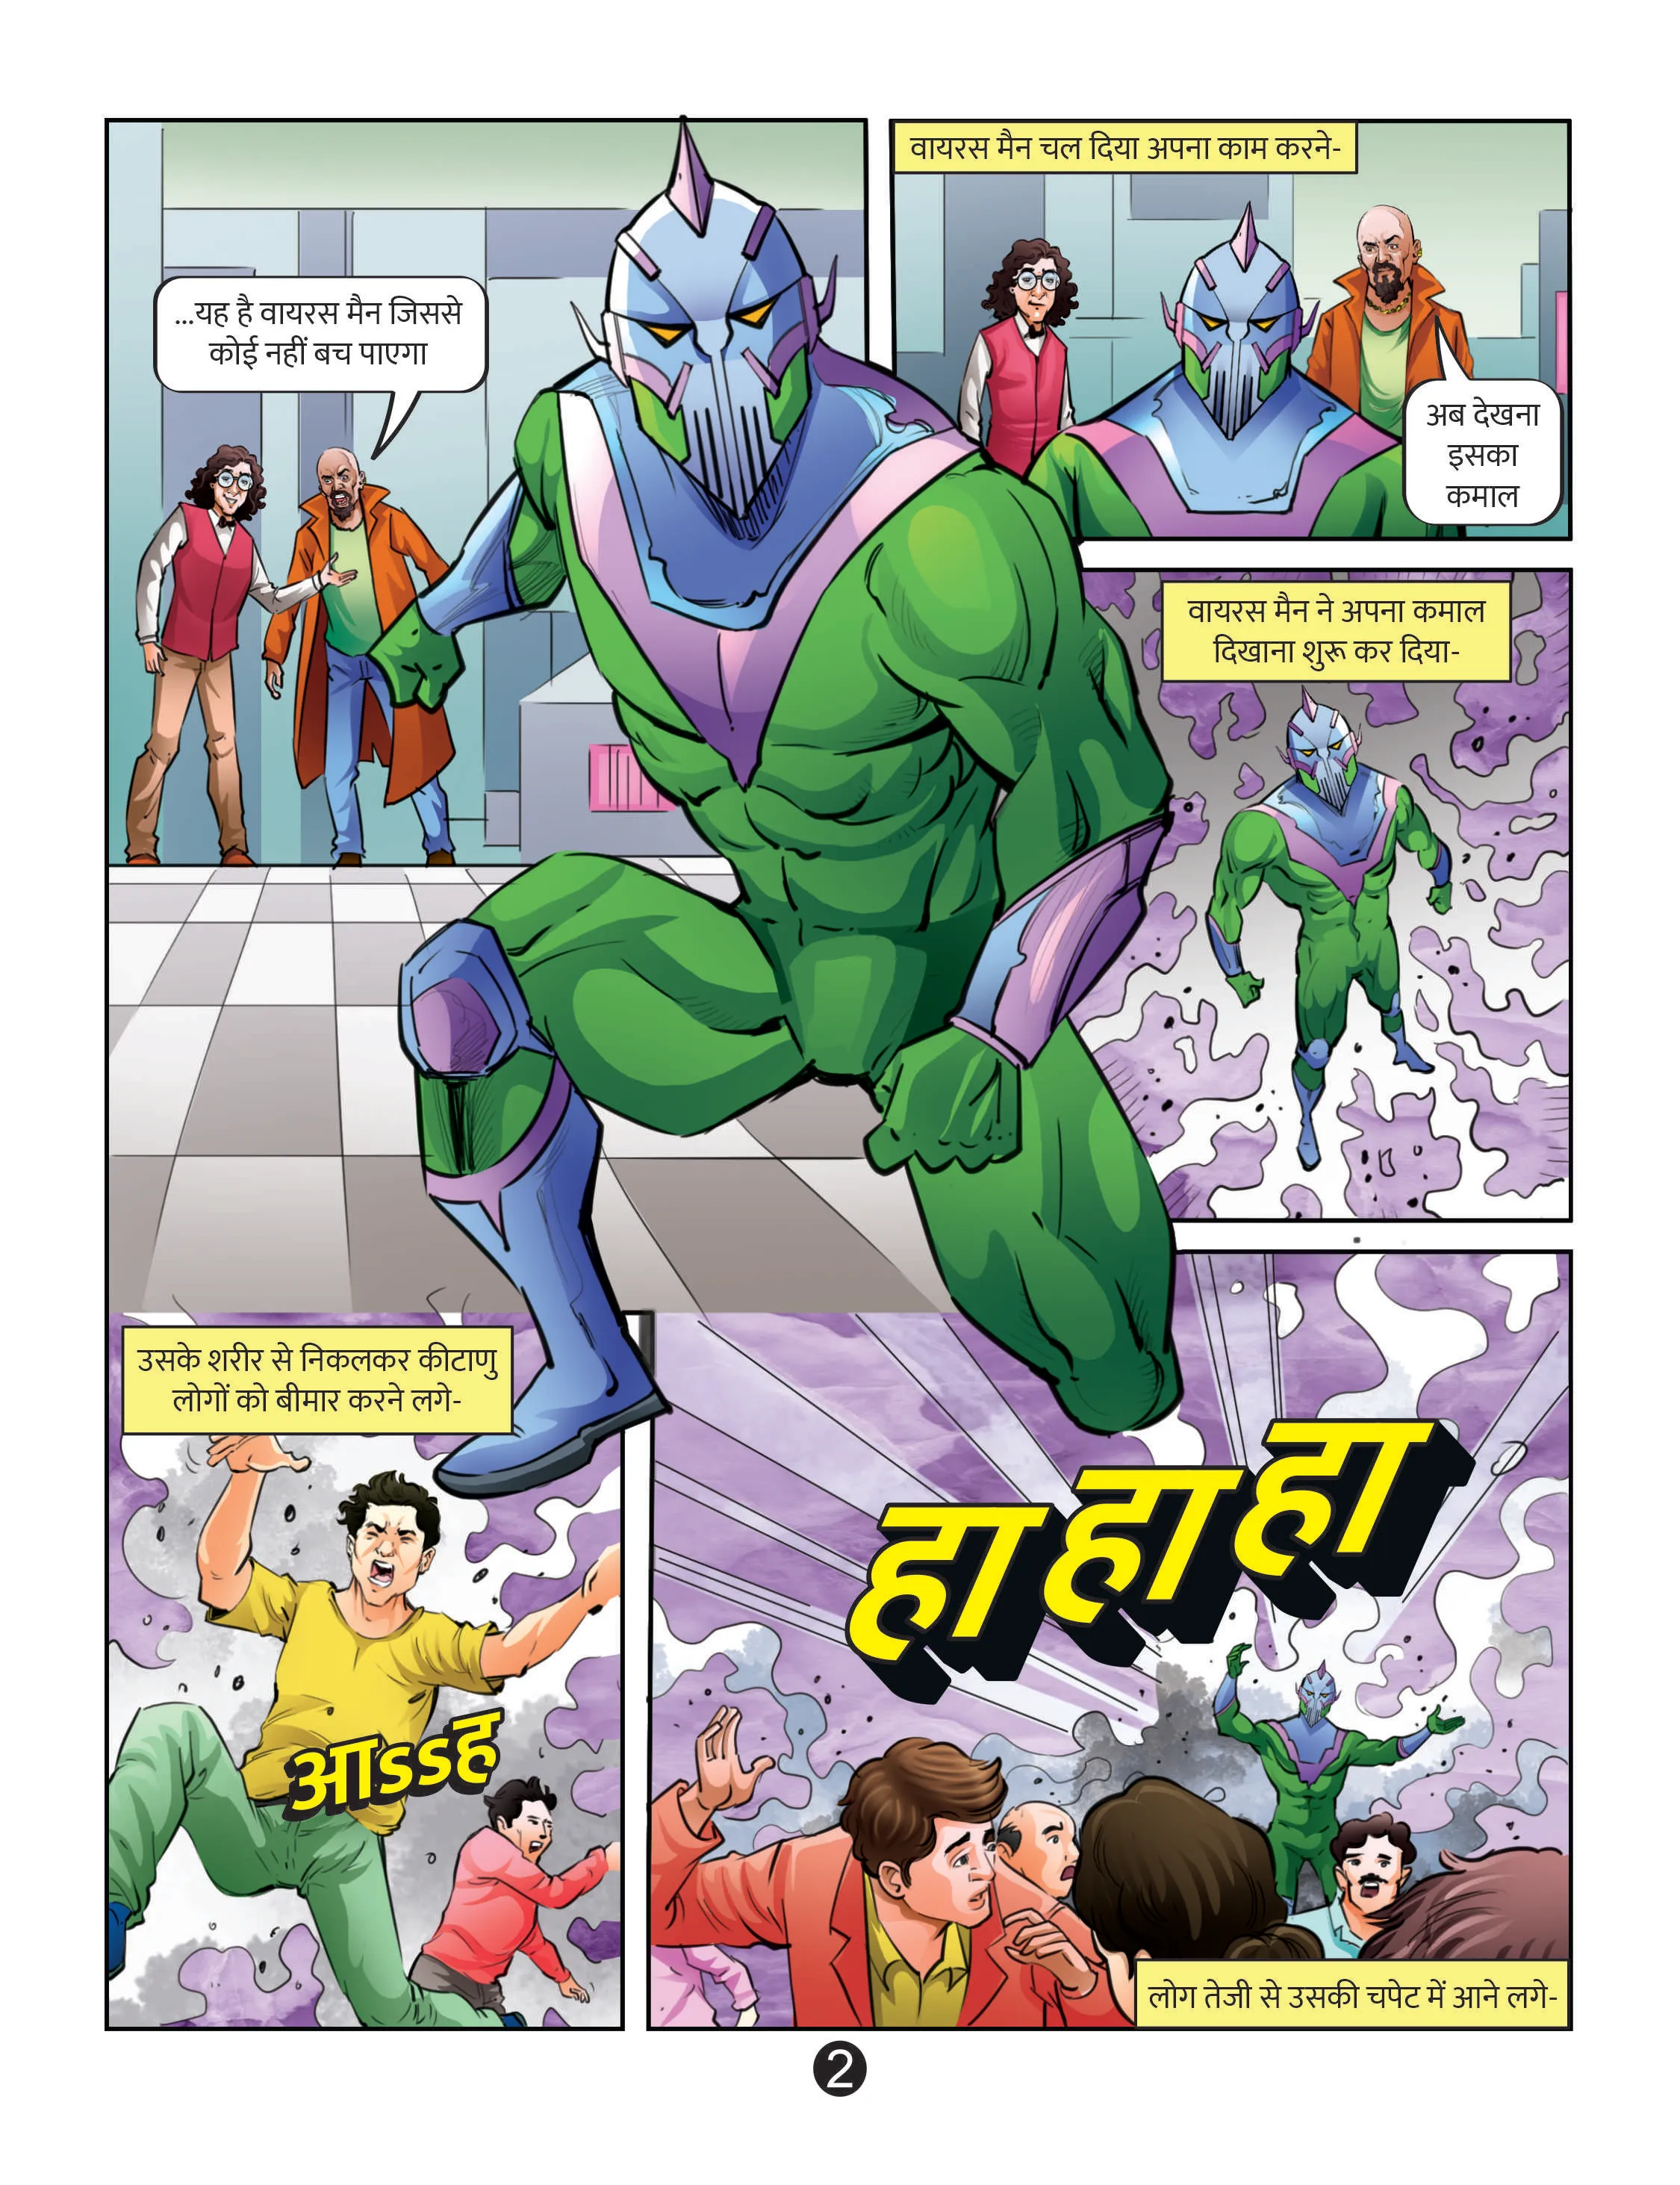 Lotpot E-Comics cartoon character Janbaaz Deva